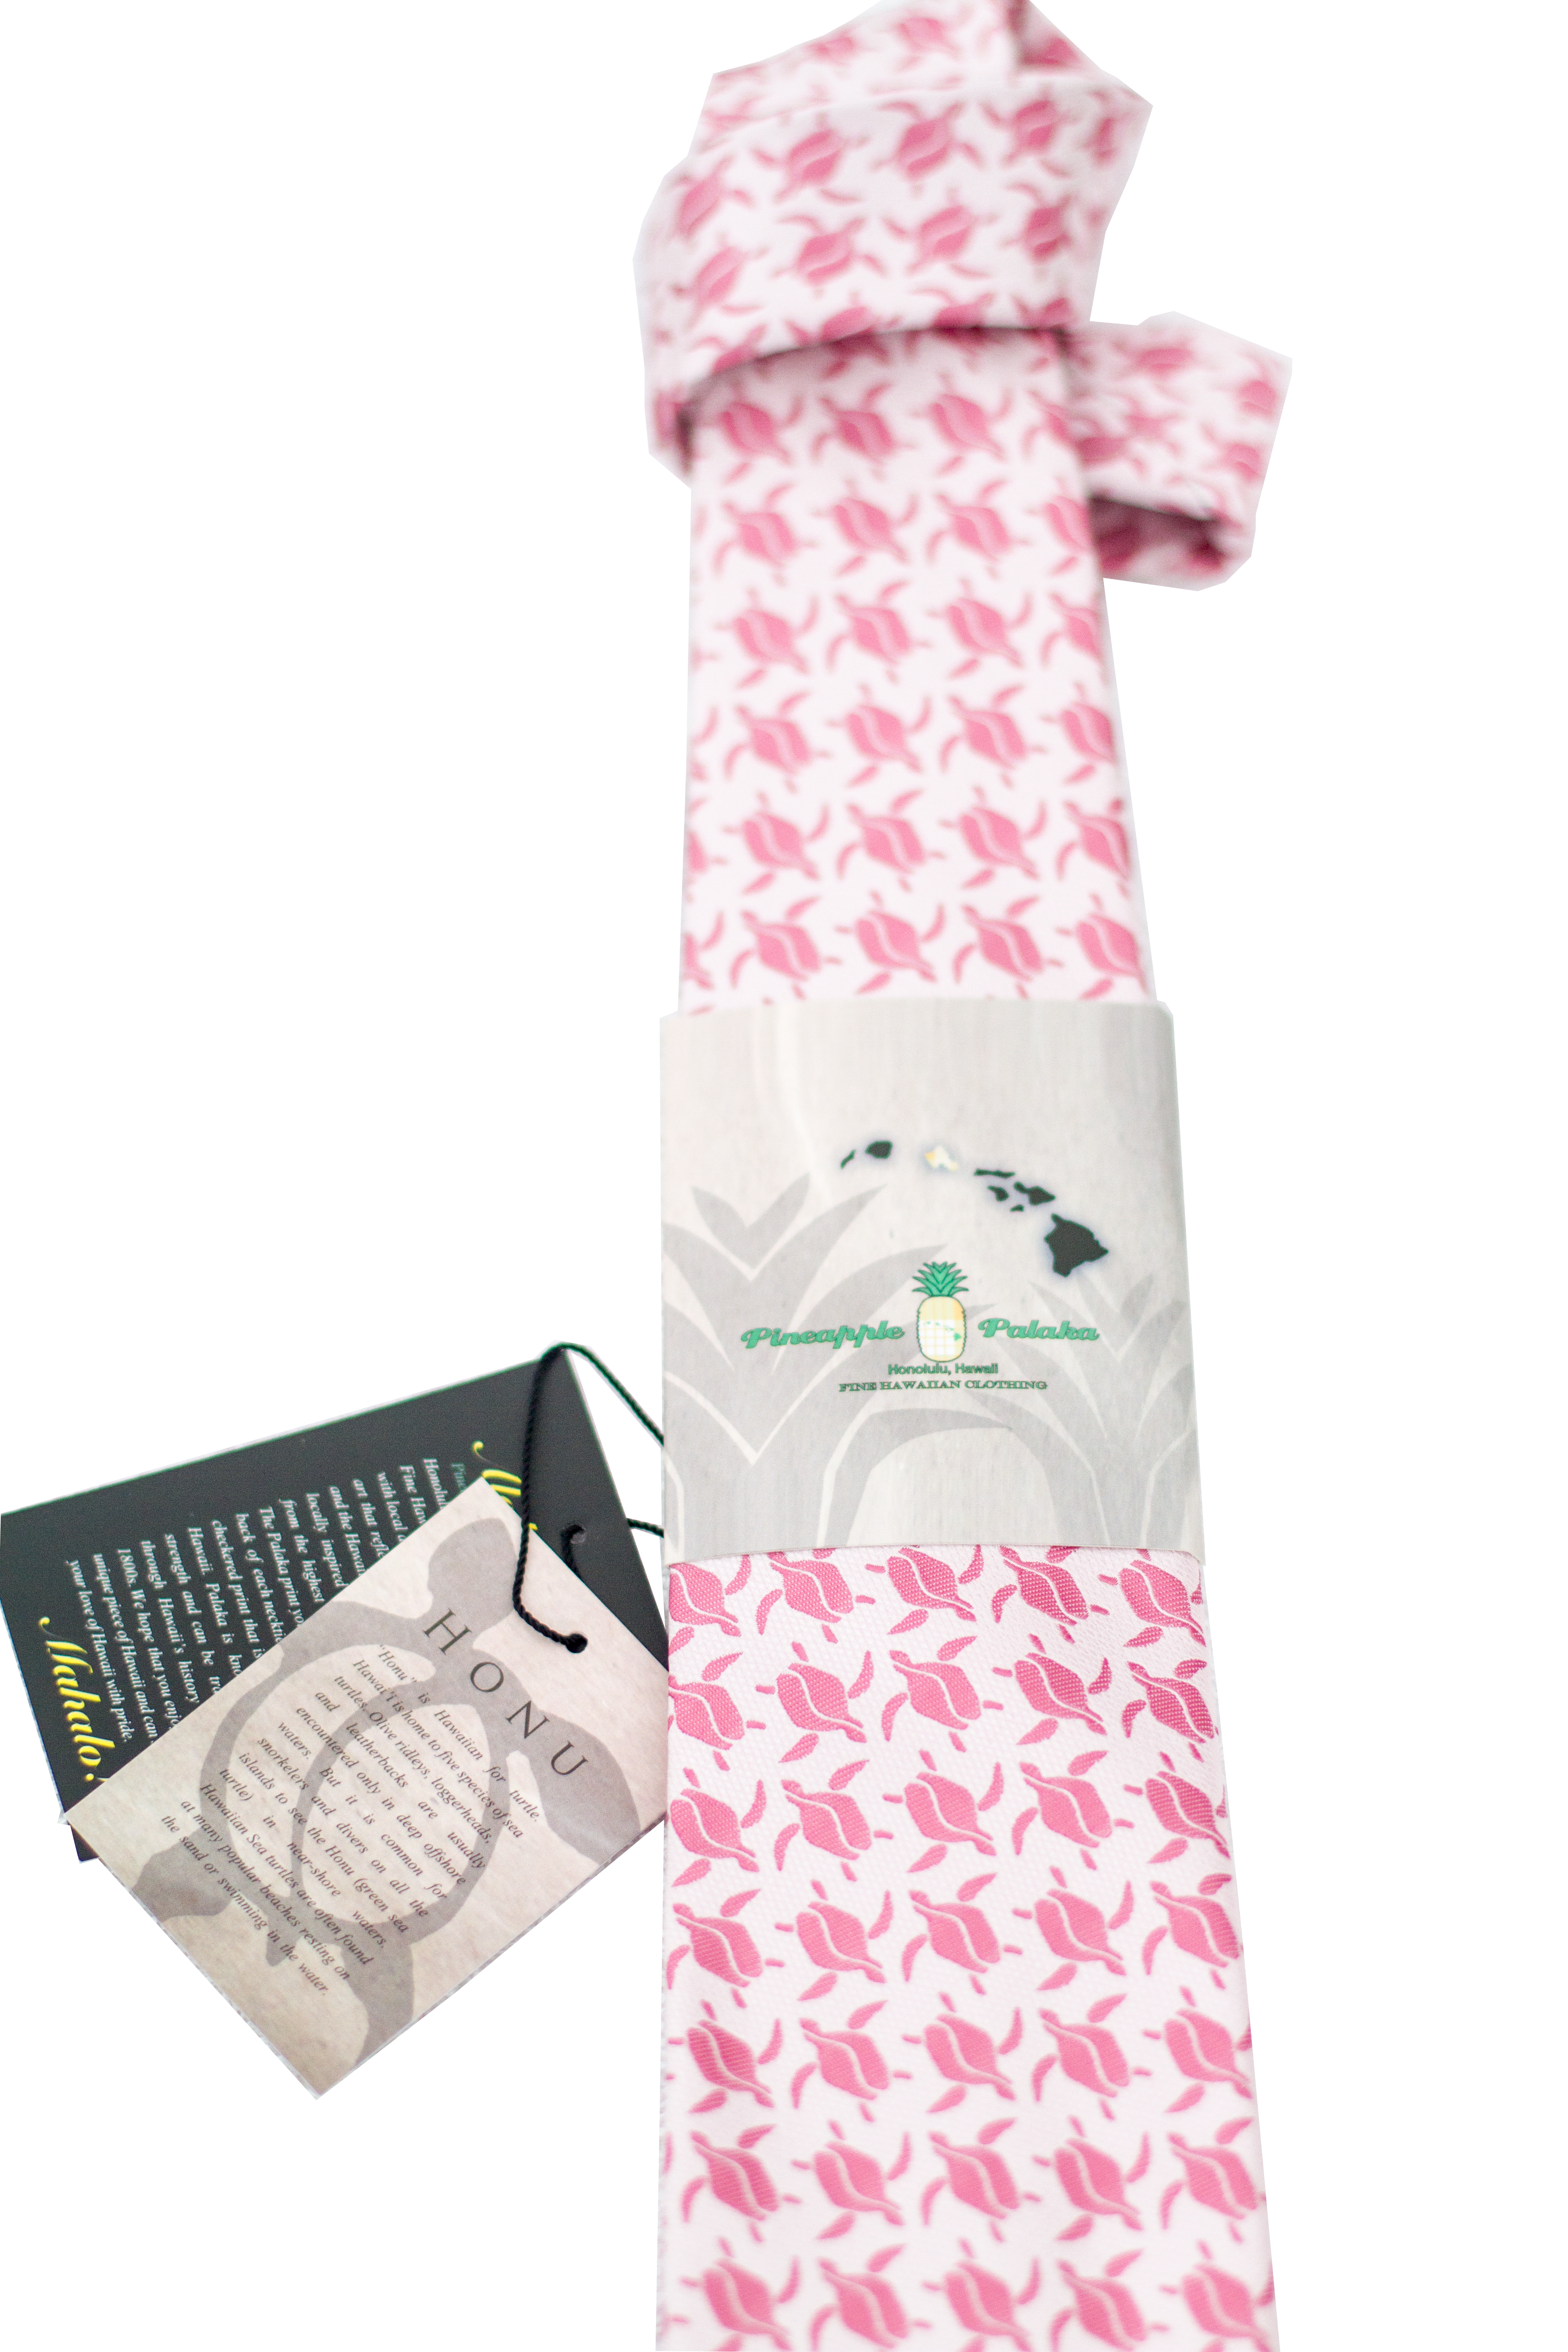 Honu Pink Modern Necktie